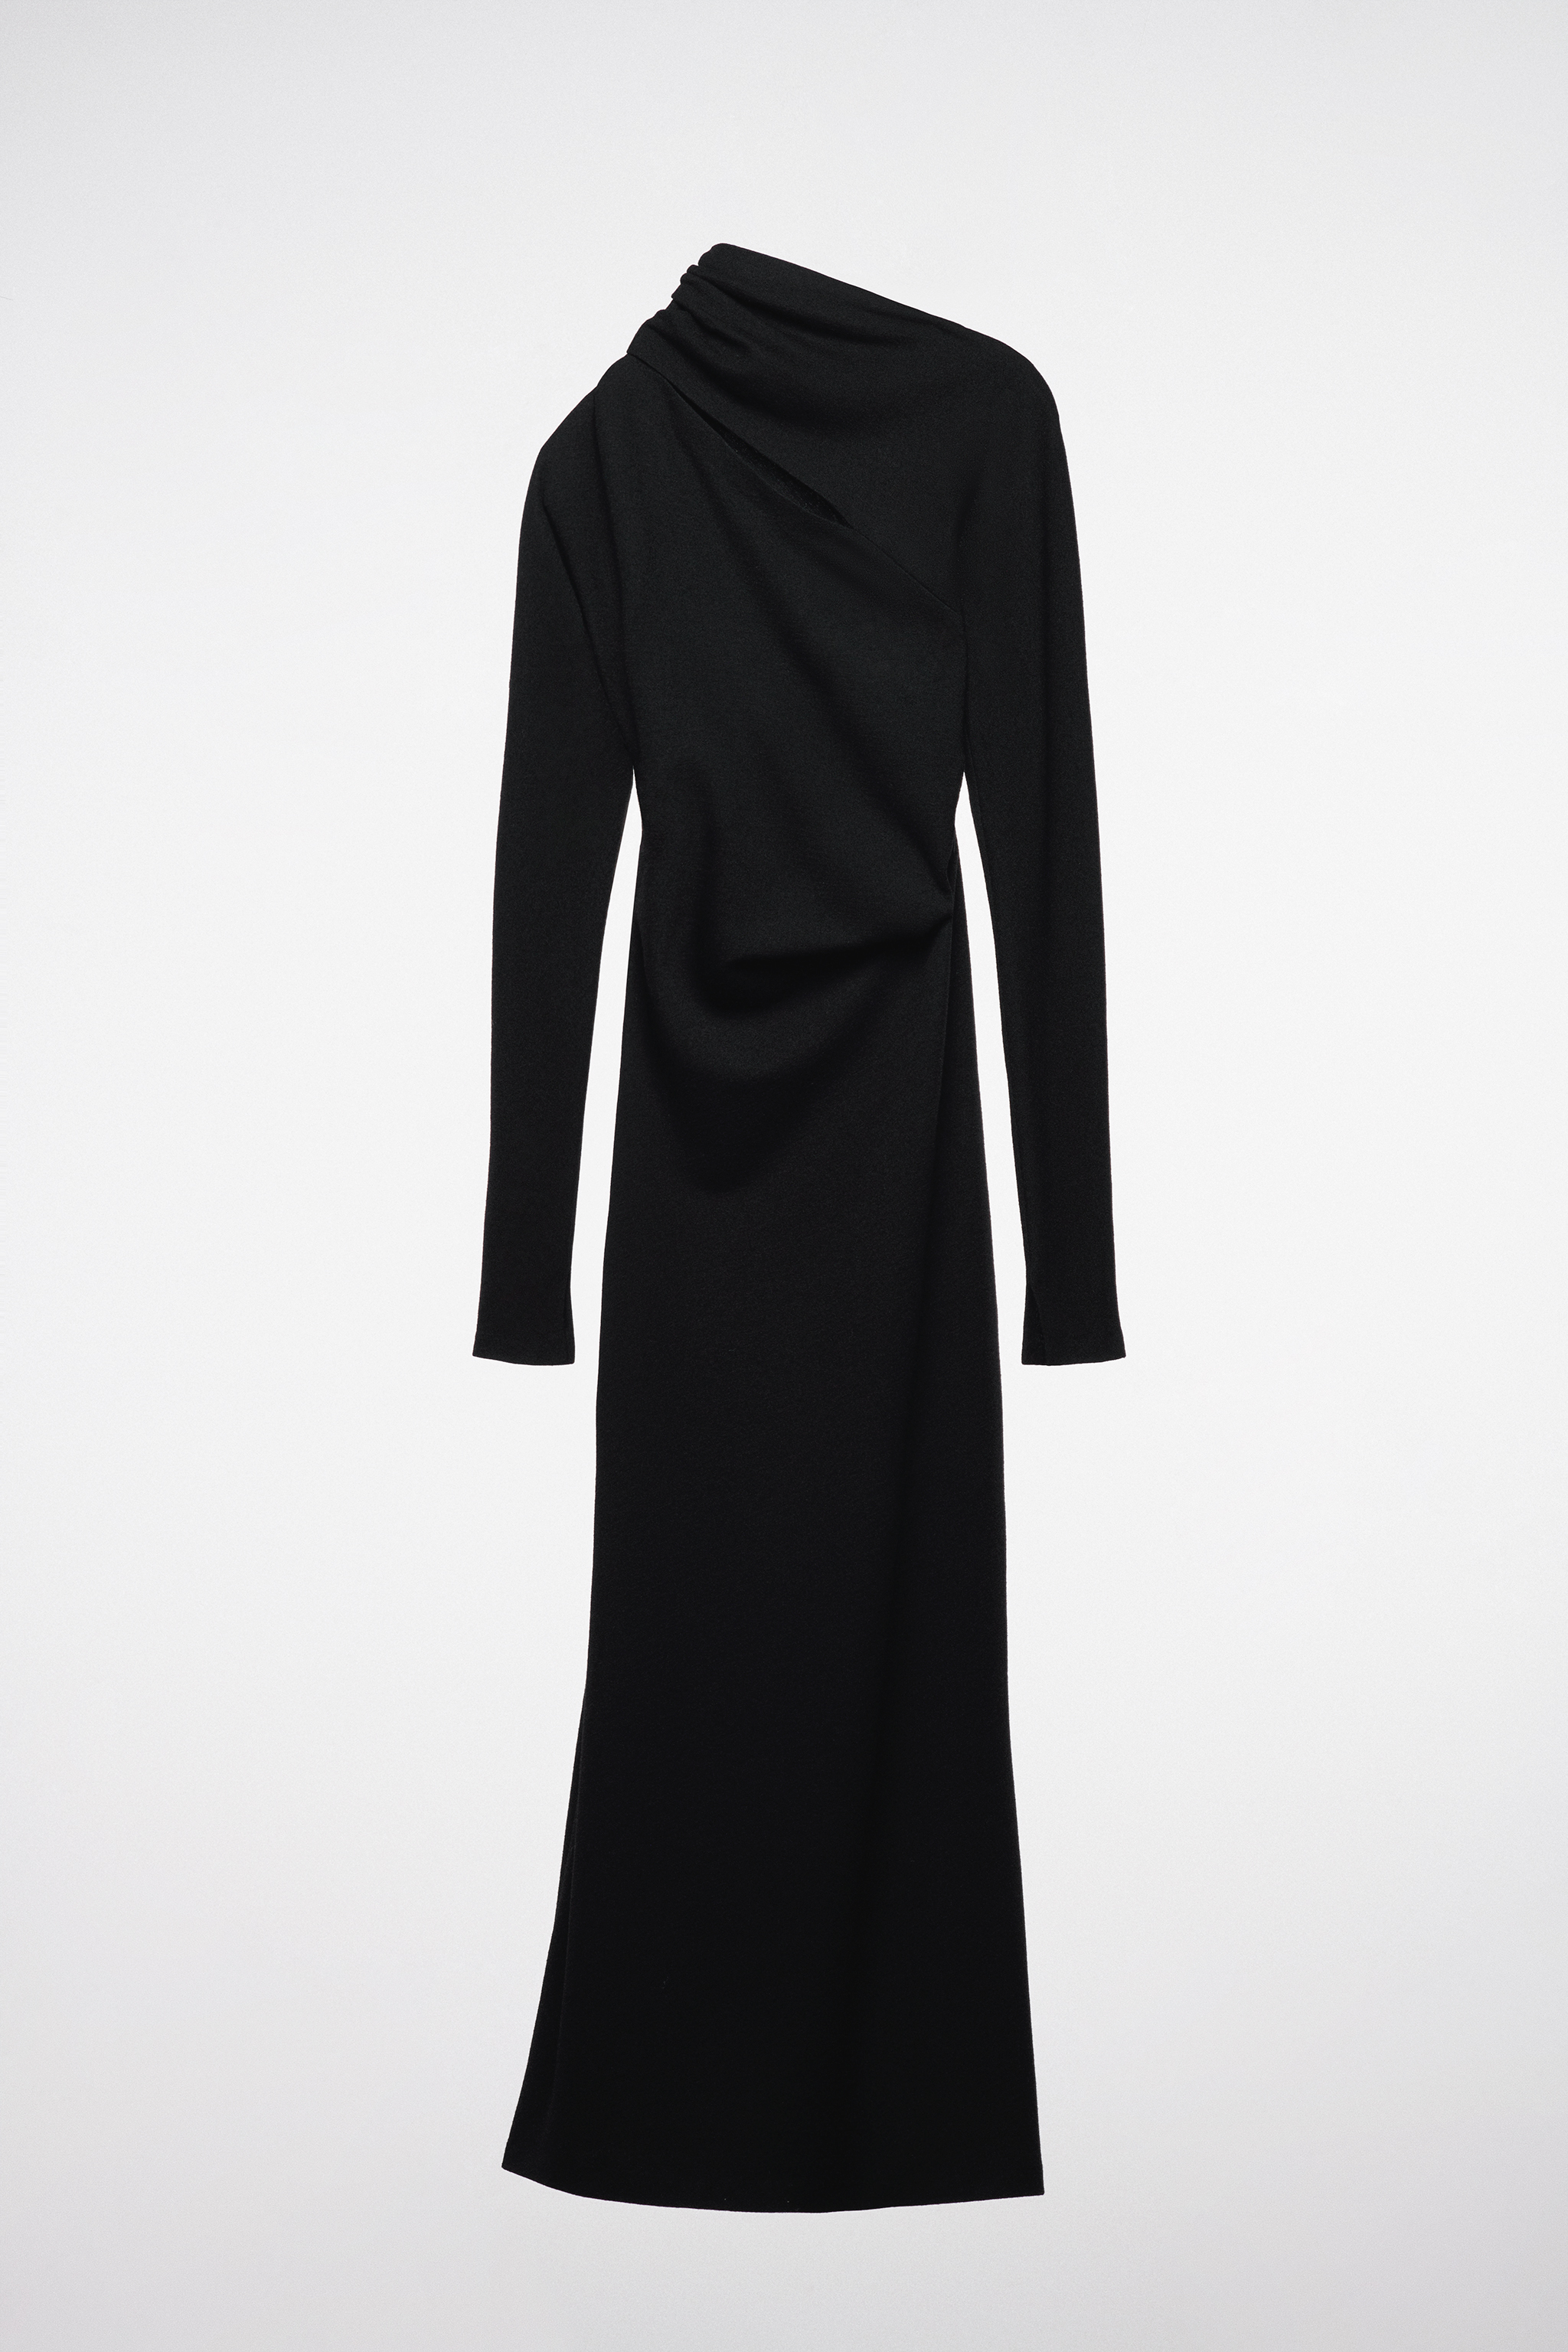 Un vestido negro que deja al descubierto un hombro de Zara.